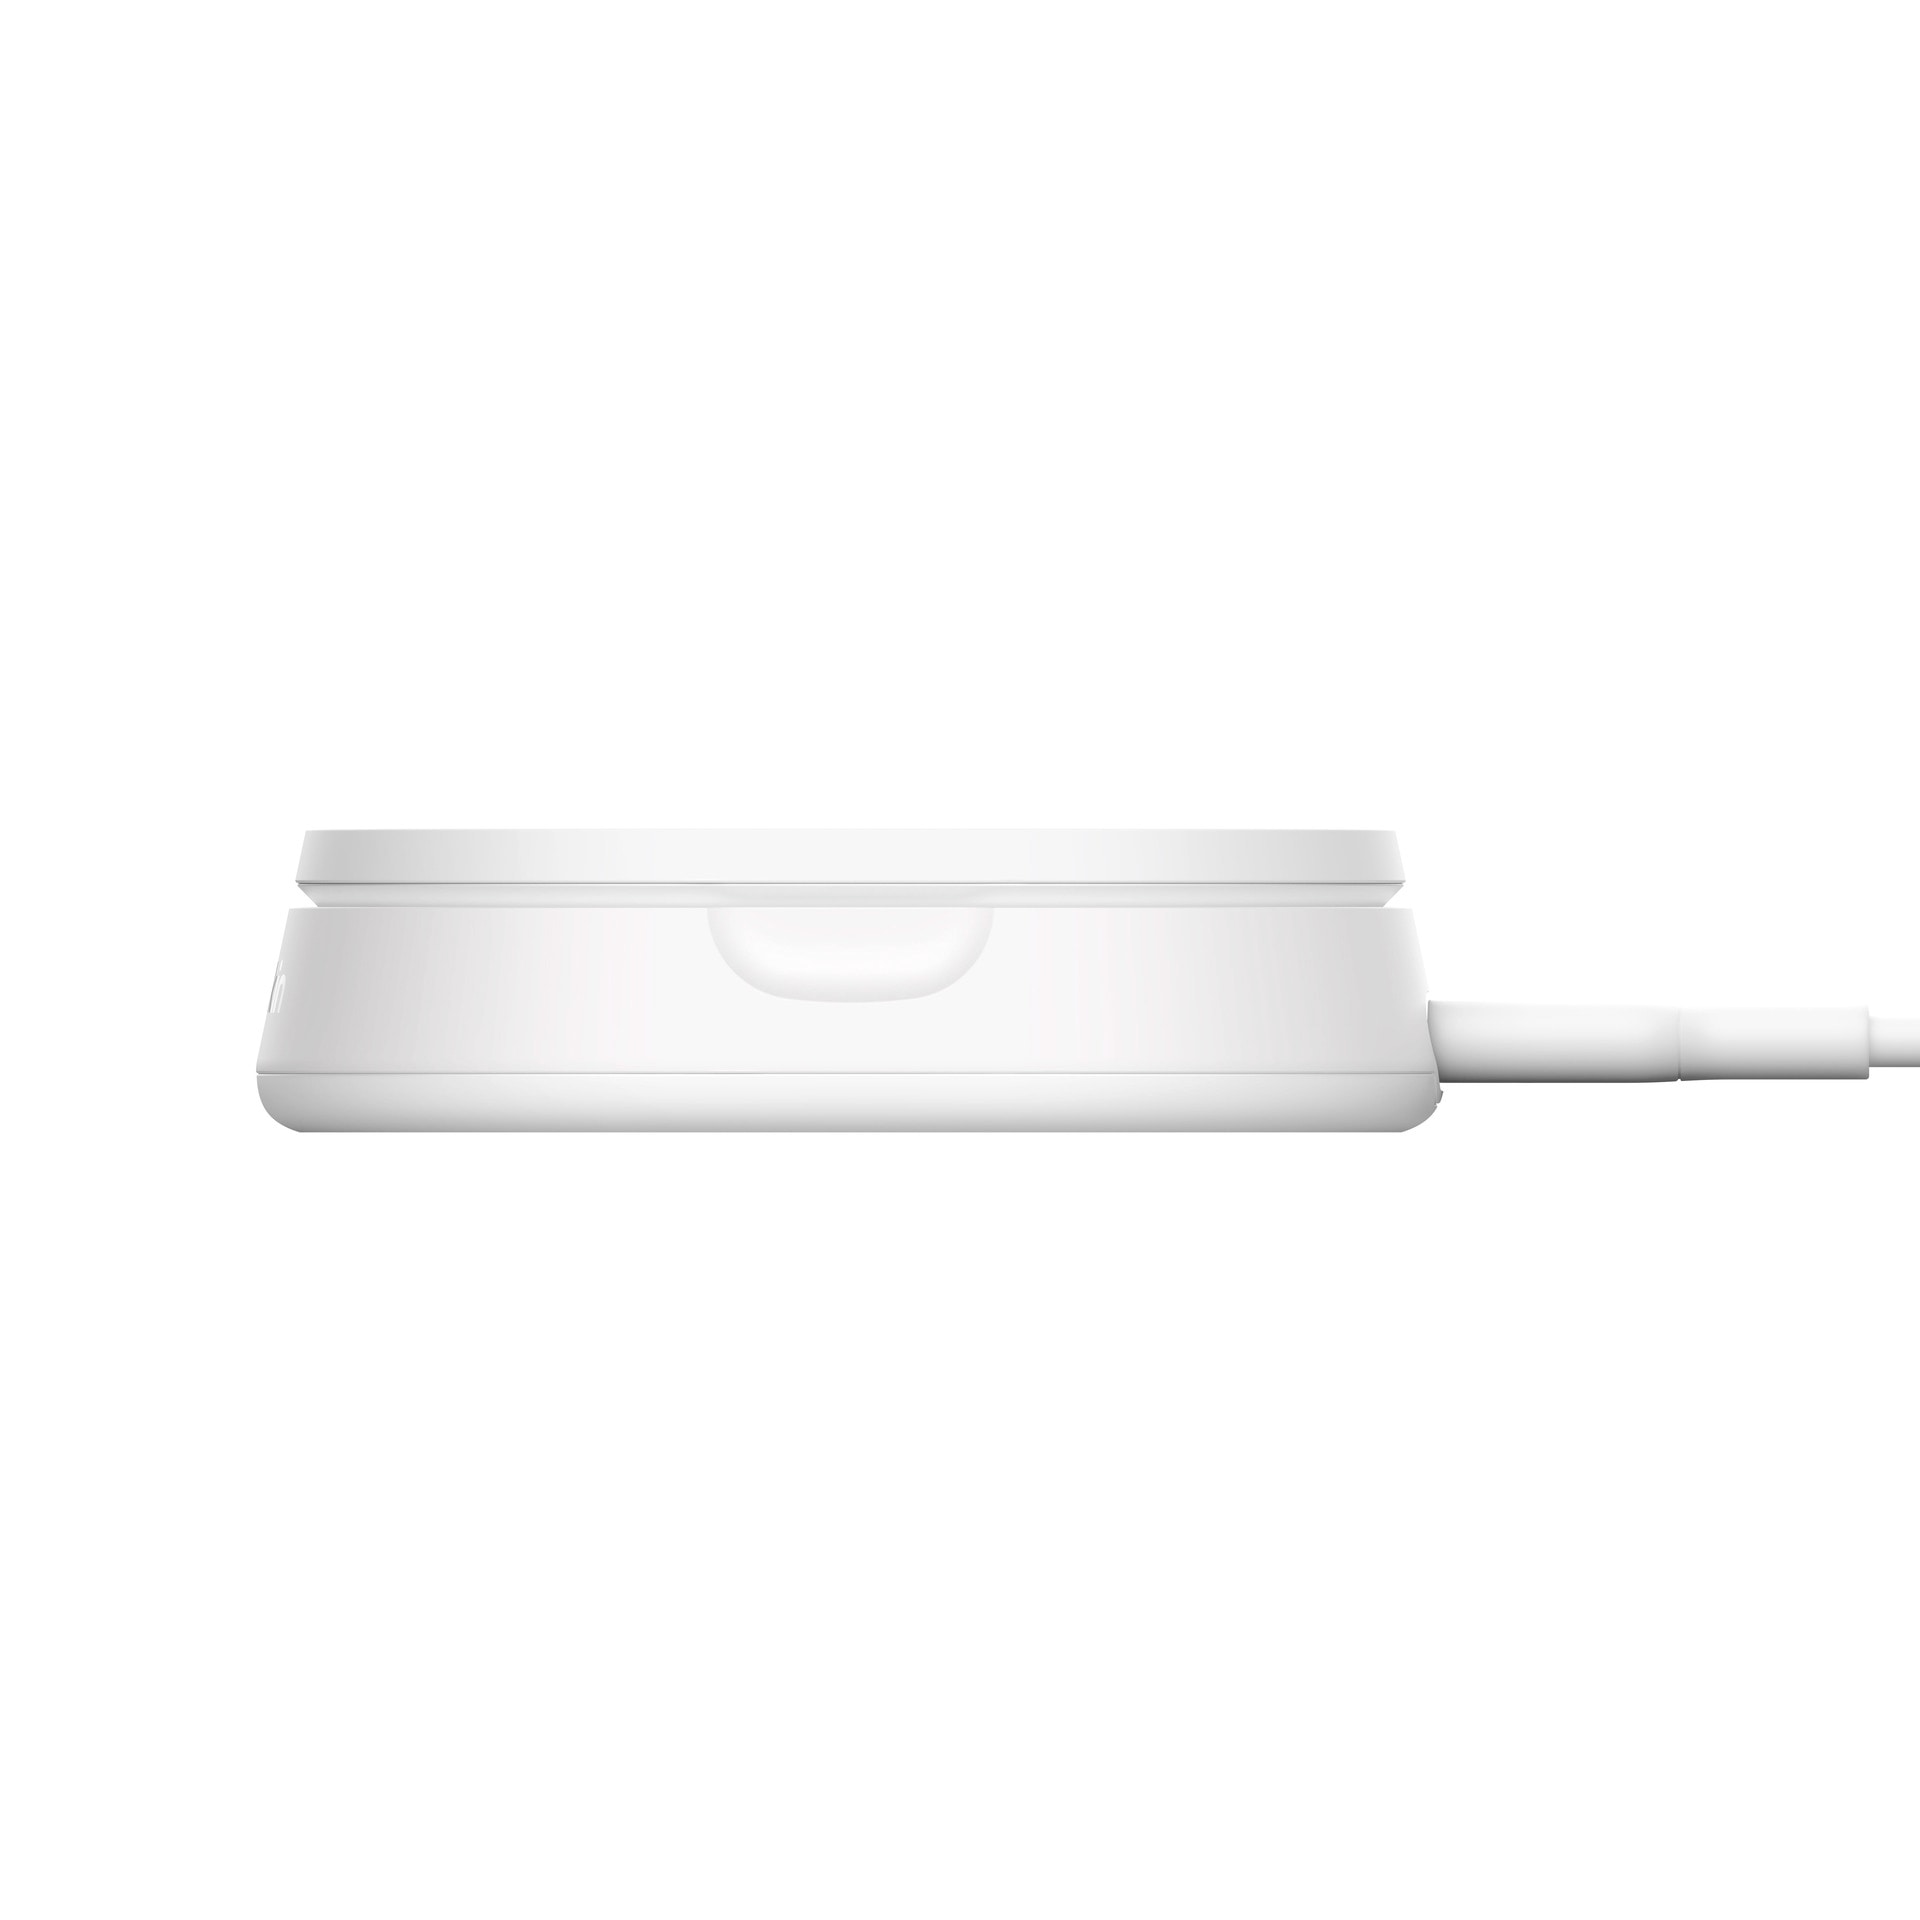 Belkin Wireless Charger »BoostCharge Pro verstellbare magnetische Ladestation mit Qi2 (15 W)«, für Apple iPhone 12/13/14/15 mini/Pro/Max/Pro Max/Plus mit MagSafe